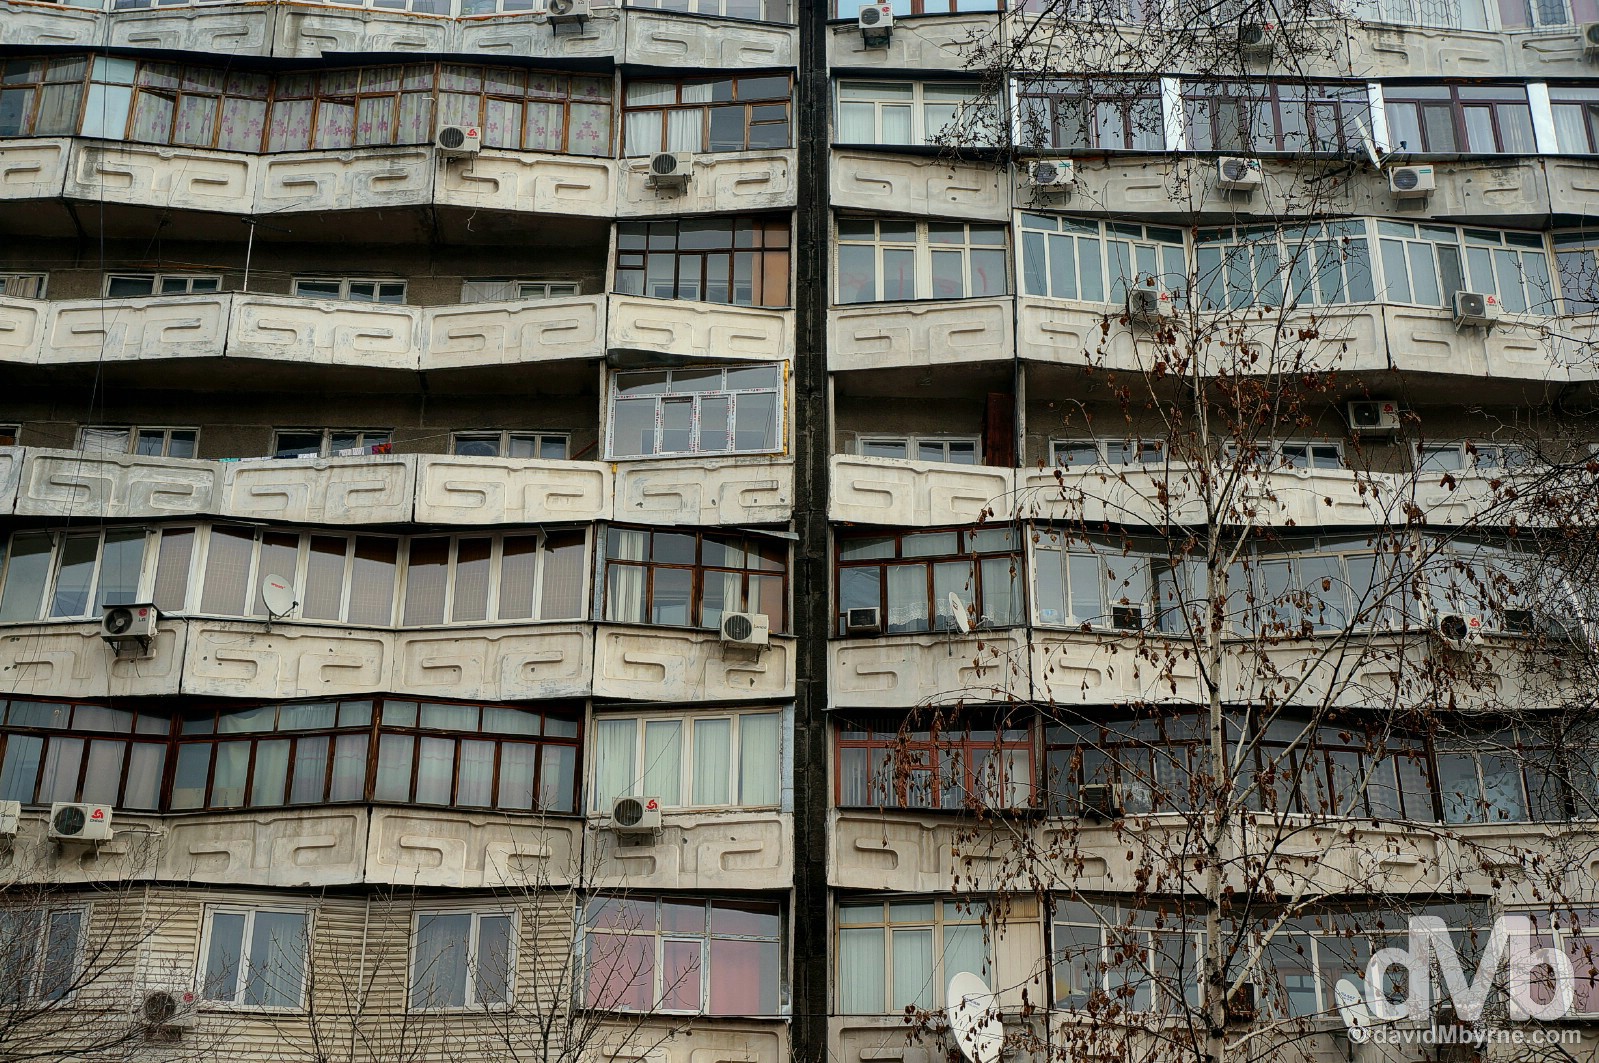 Apartment buildings on Abdrahmanov Street (Sovetskaya Street) in Bishkek, Kyrgyzstan. February 23, 2015.